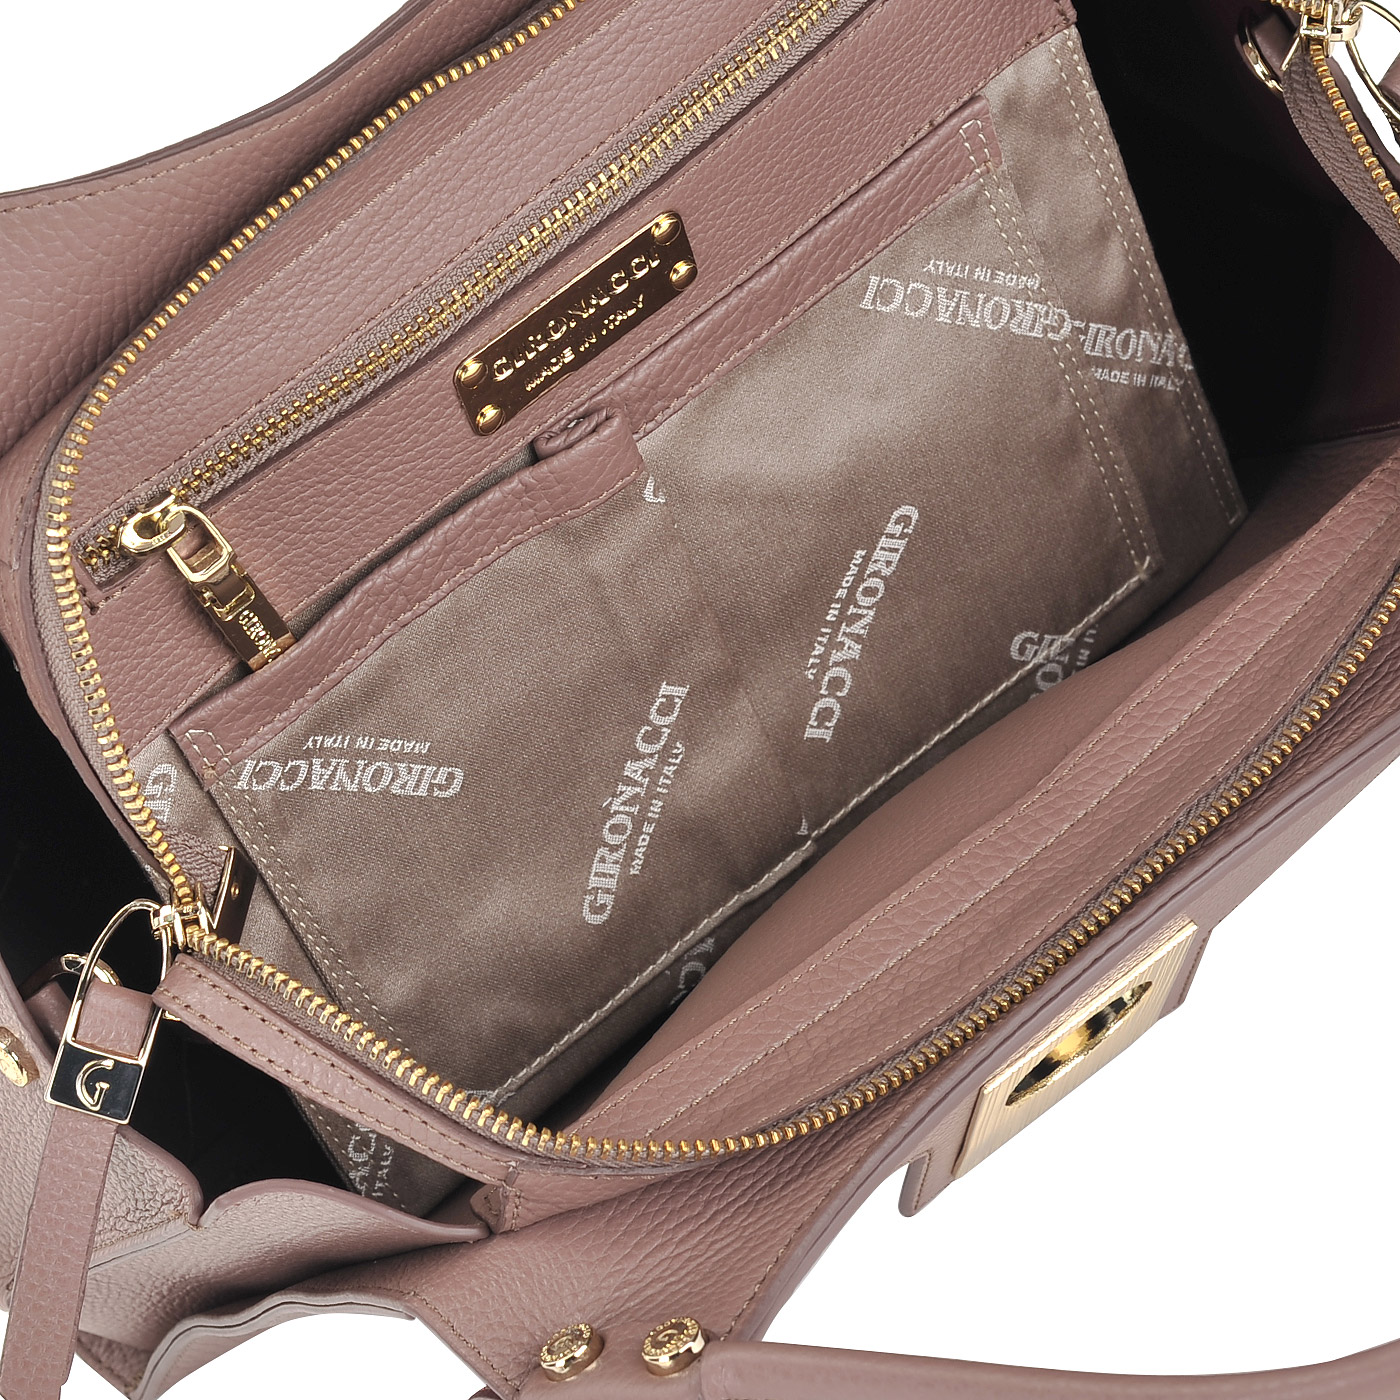 Вместительная кожаная сумка со съемным плечевым ремешком Gironacci 